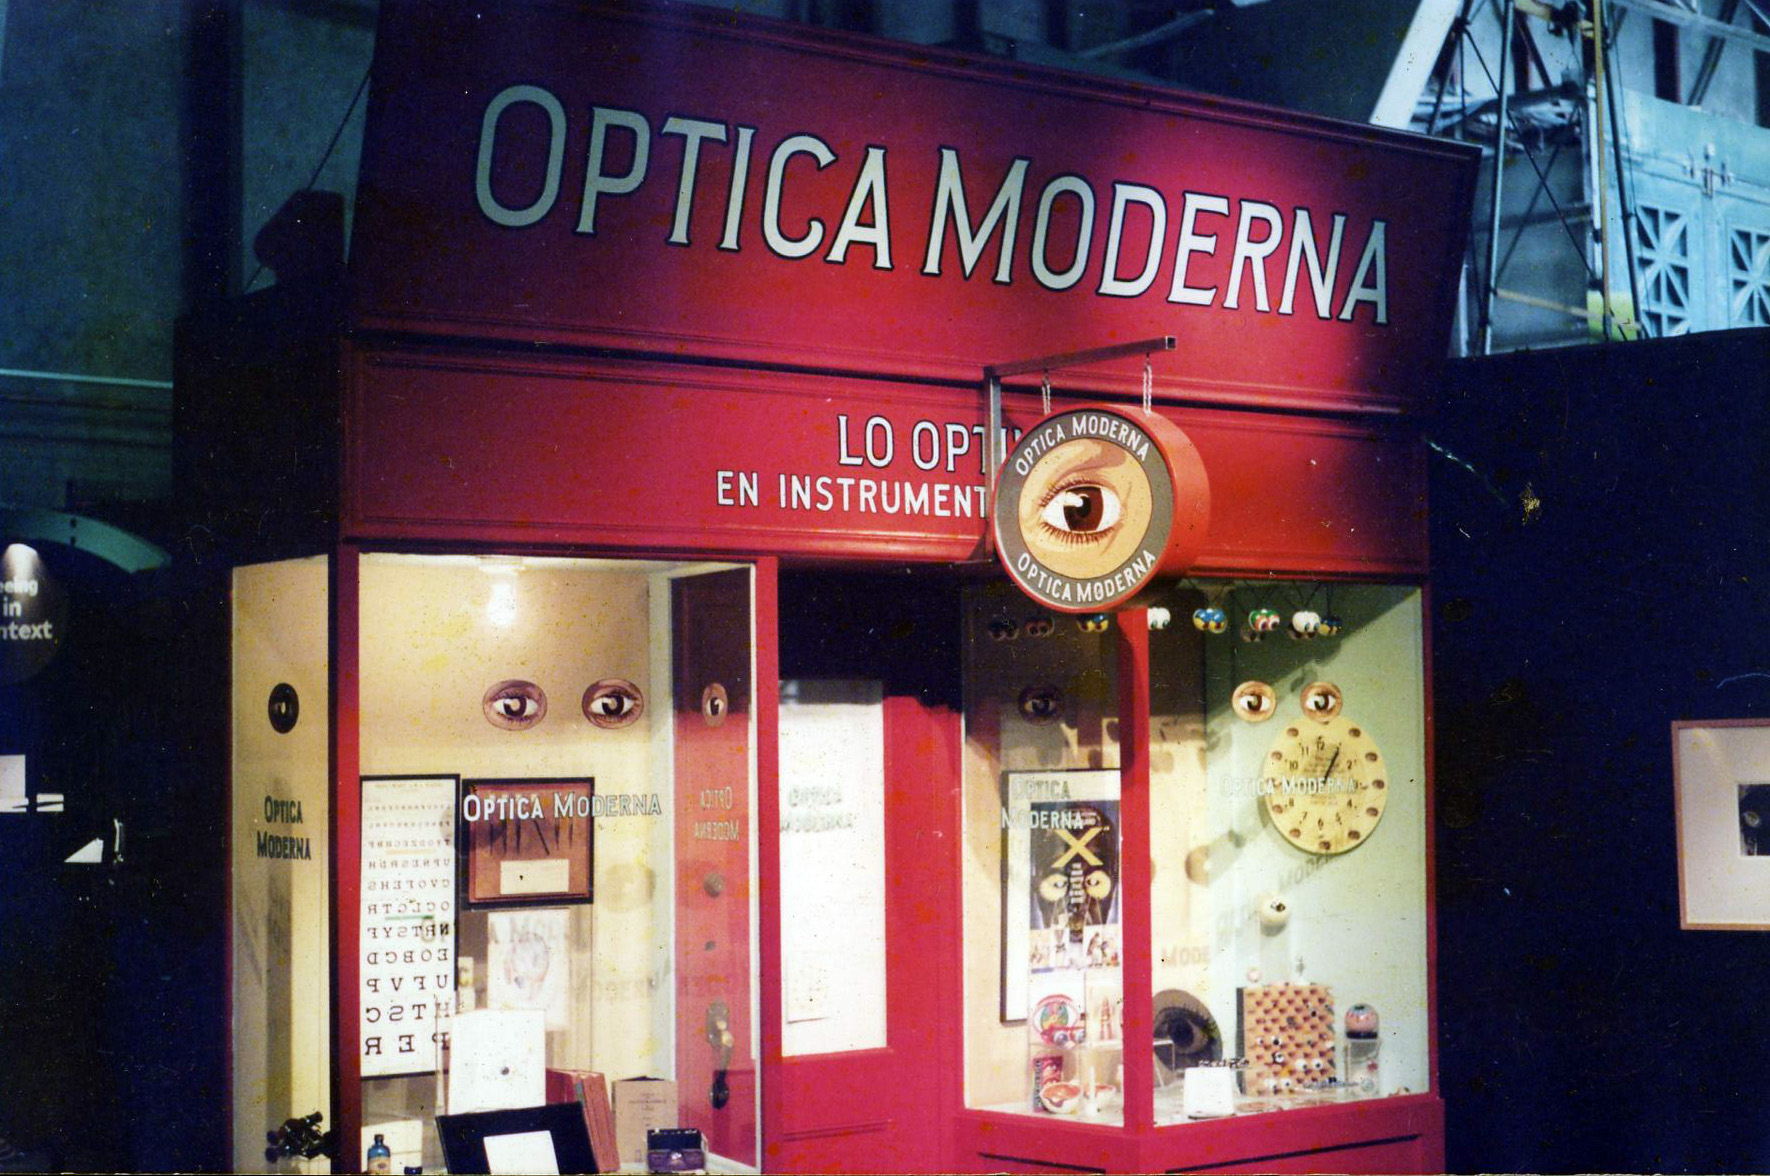 ORIG-optica-moderna_5958657091_o.jpg